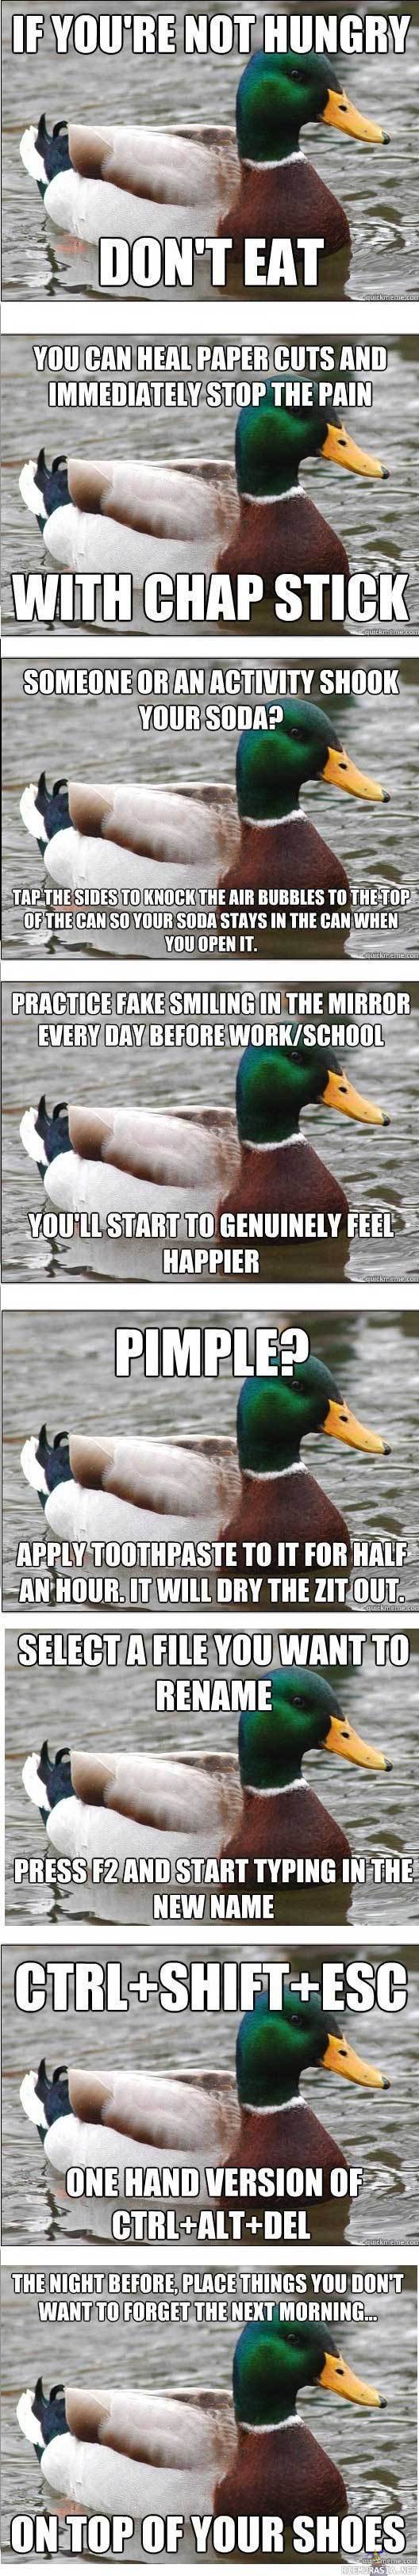 Advice duck - Hyviä neuvoja sorsalta